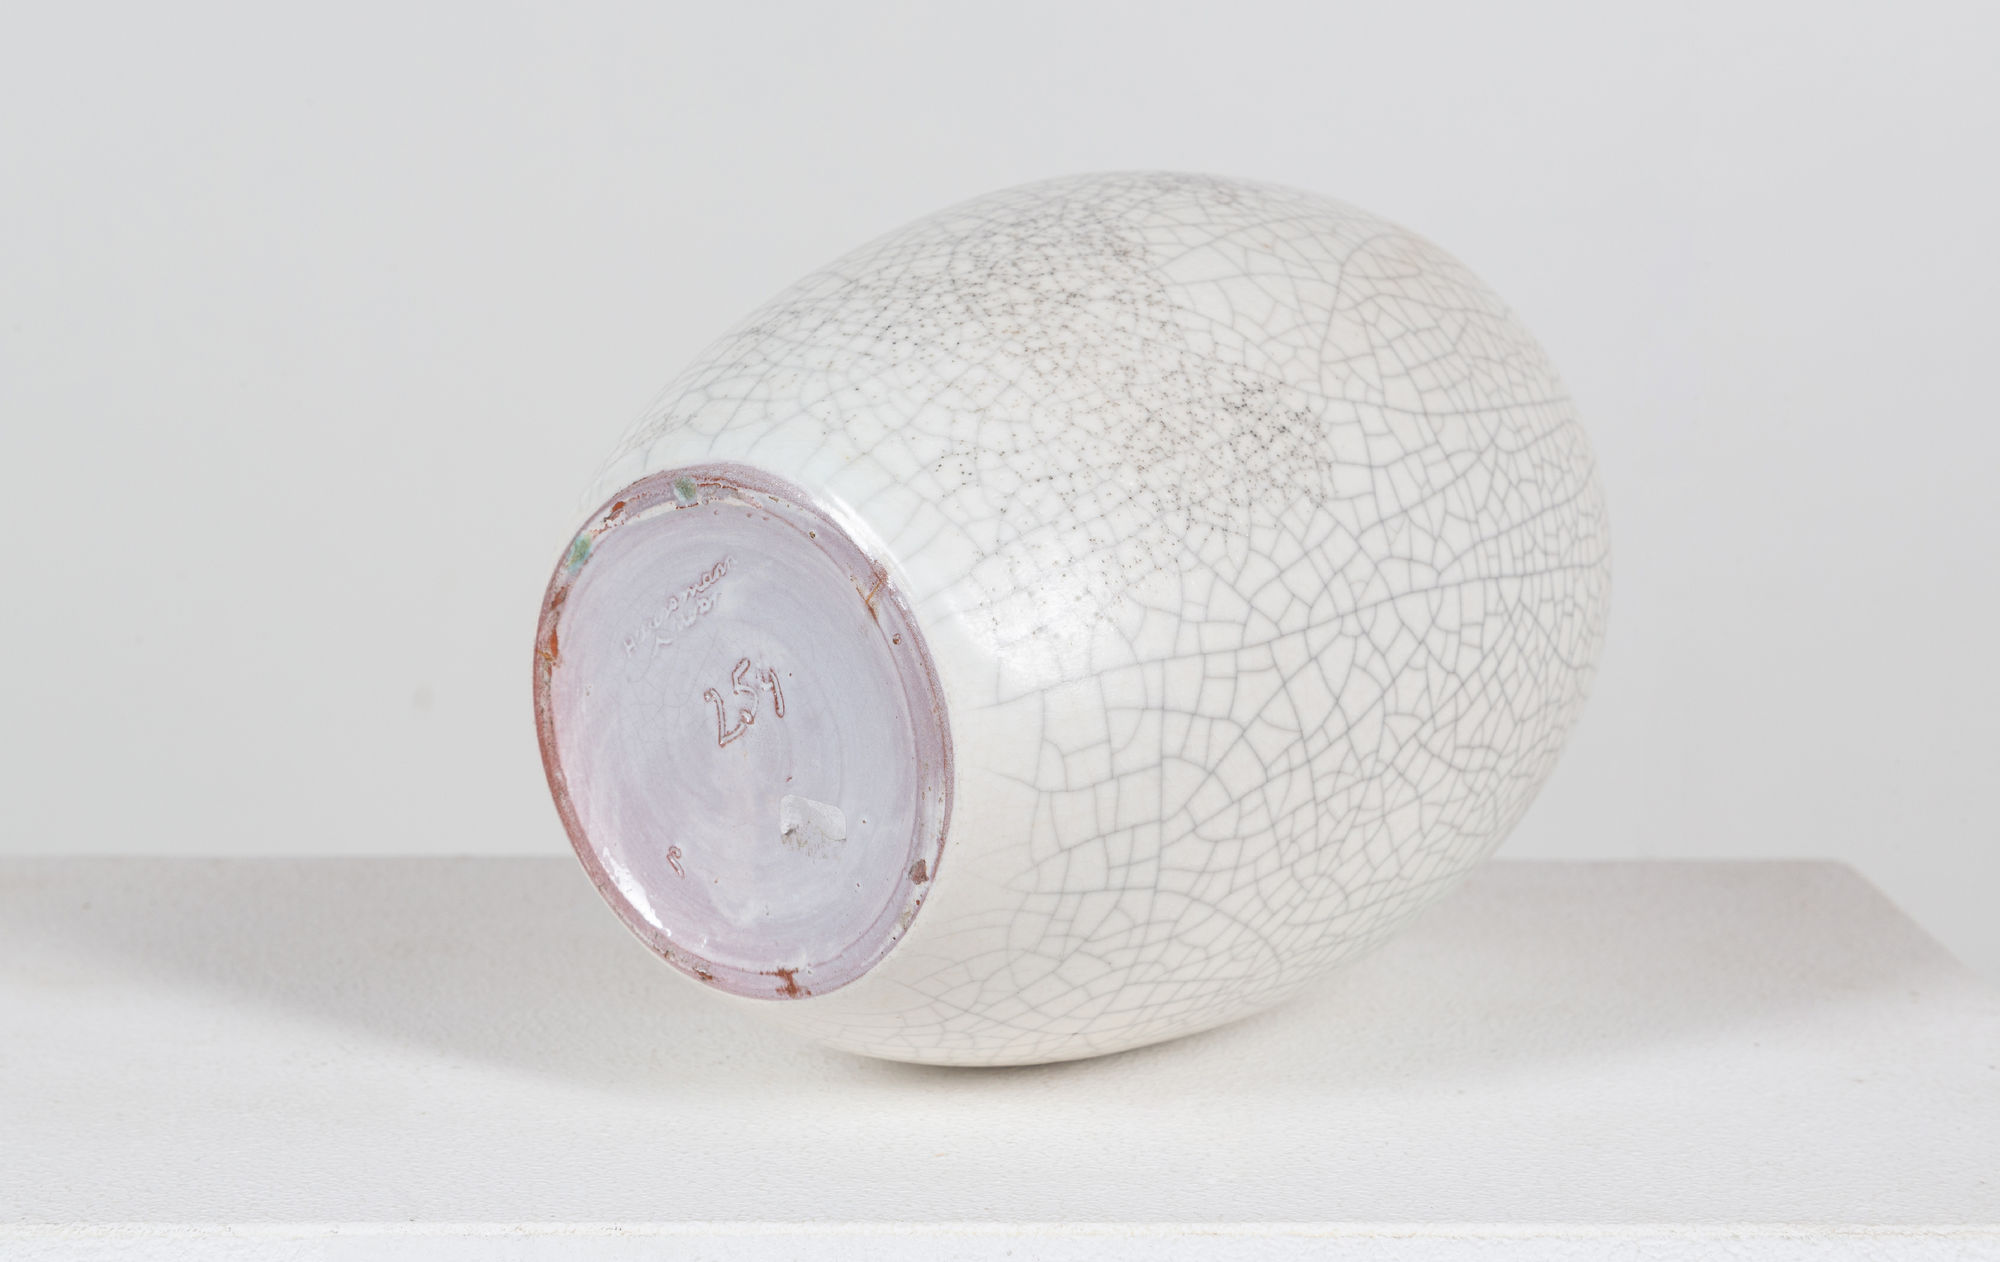  Fritz Haussmann Ceramic vase